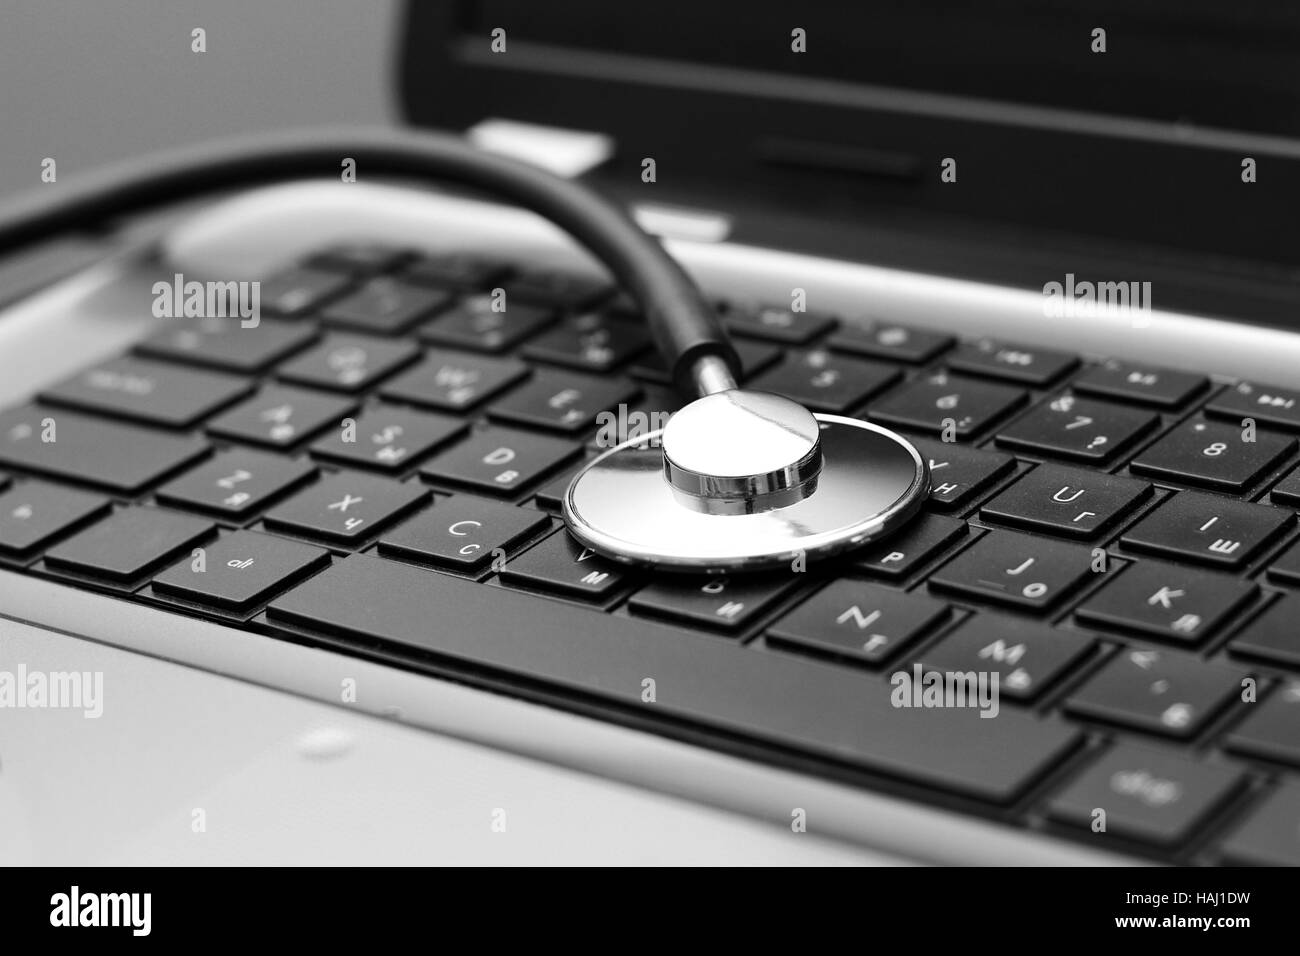 stethoscope on laptop keyboard Stock Photo